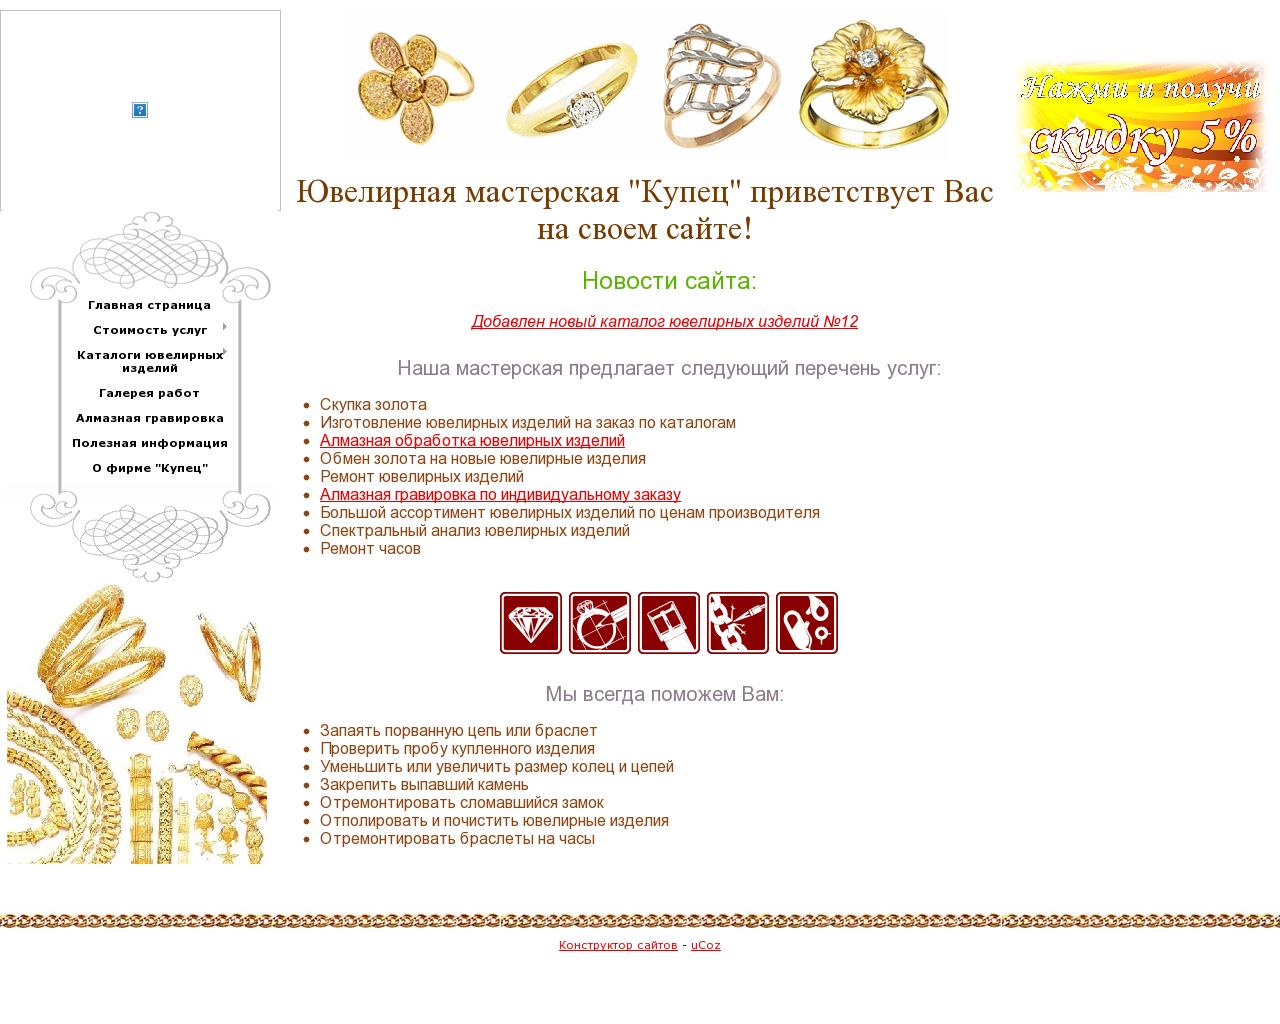 Изображение сайта золотой-купец.рф в разрешении 1280x1024